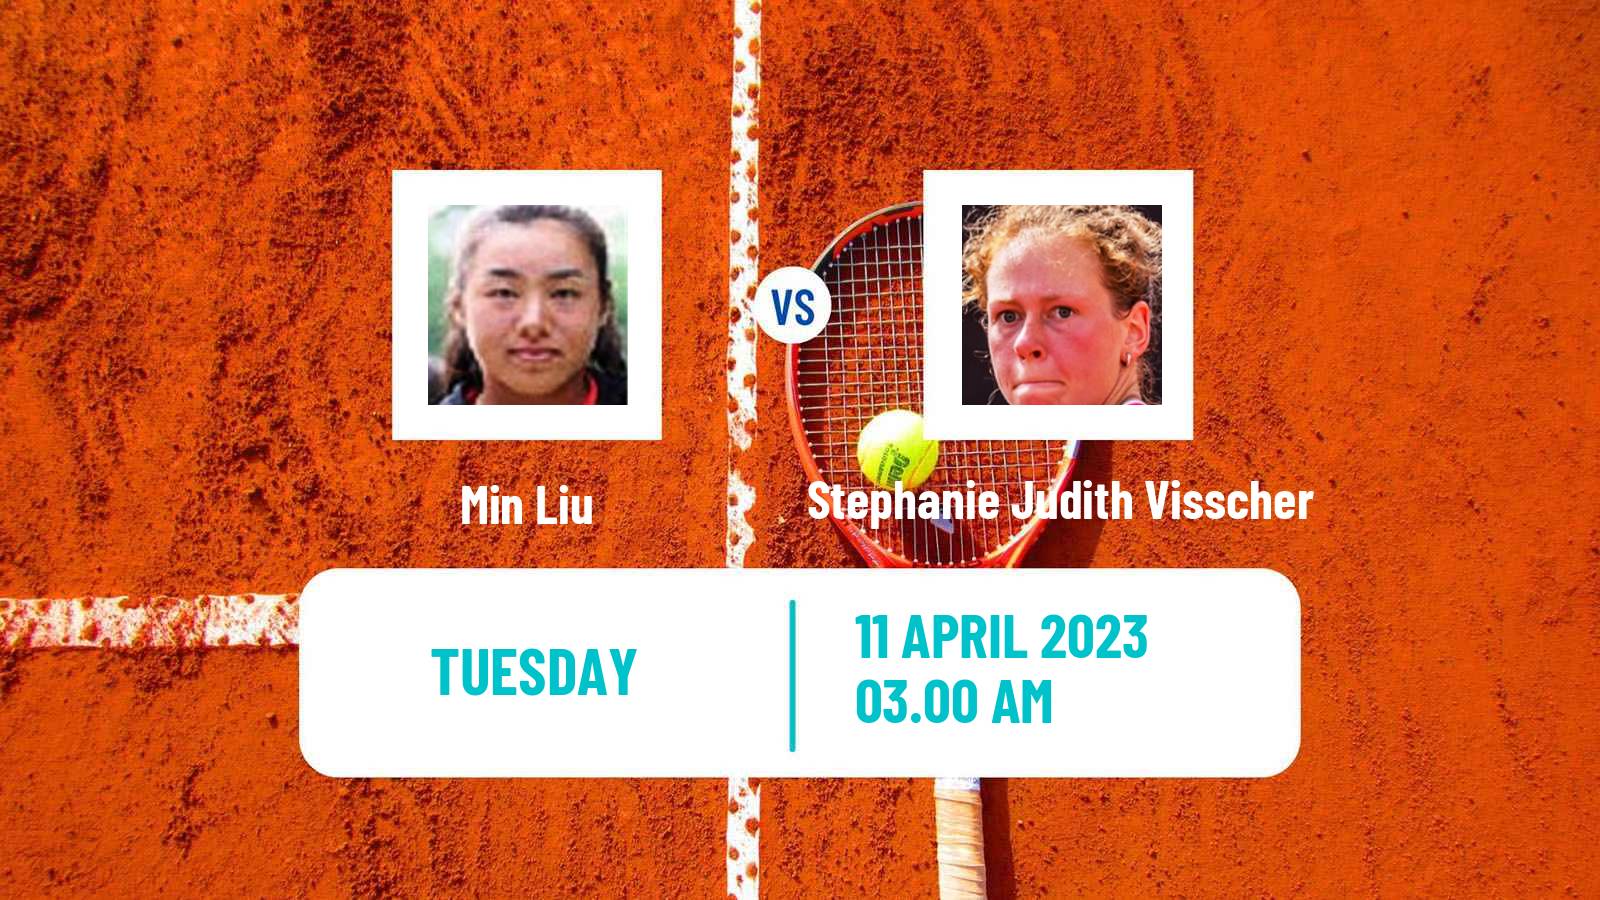 Tennis ITF Tournaments Min Liu - Stephanie Judith Visscher